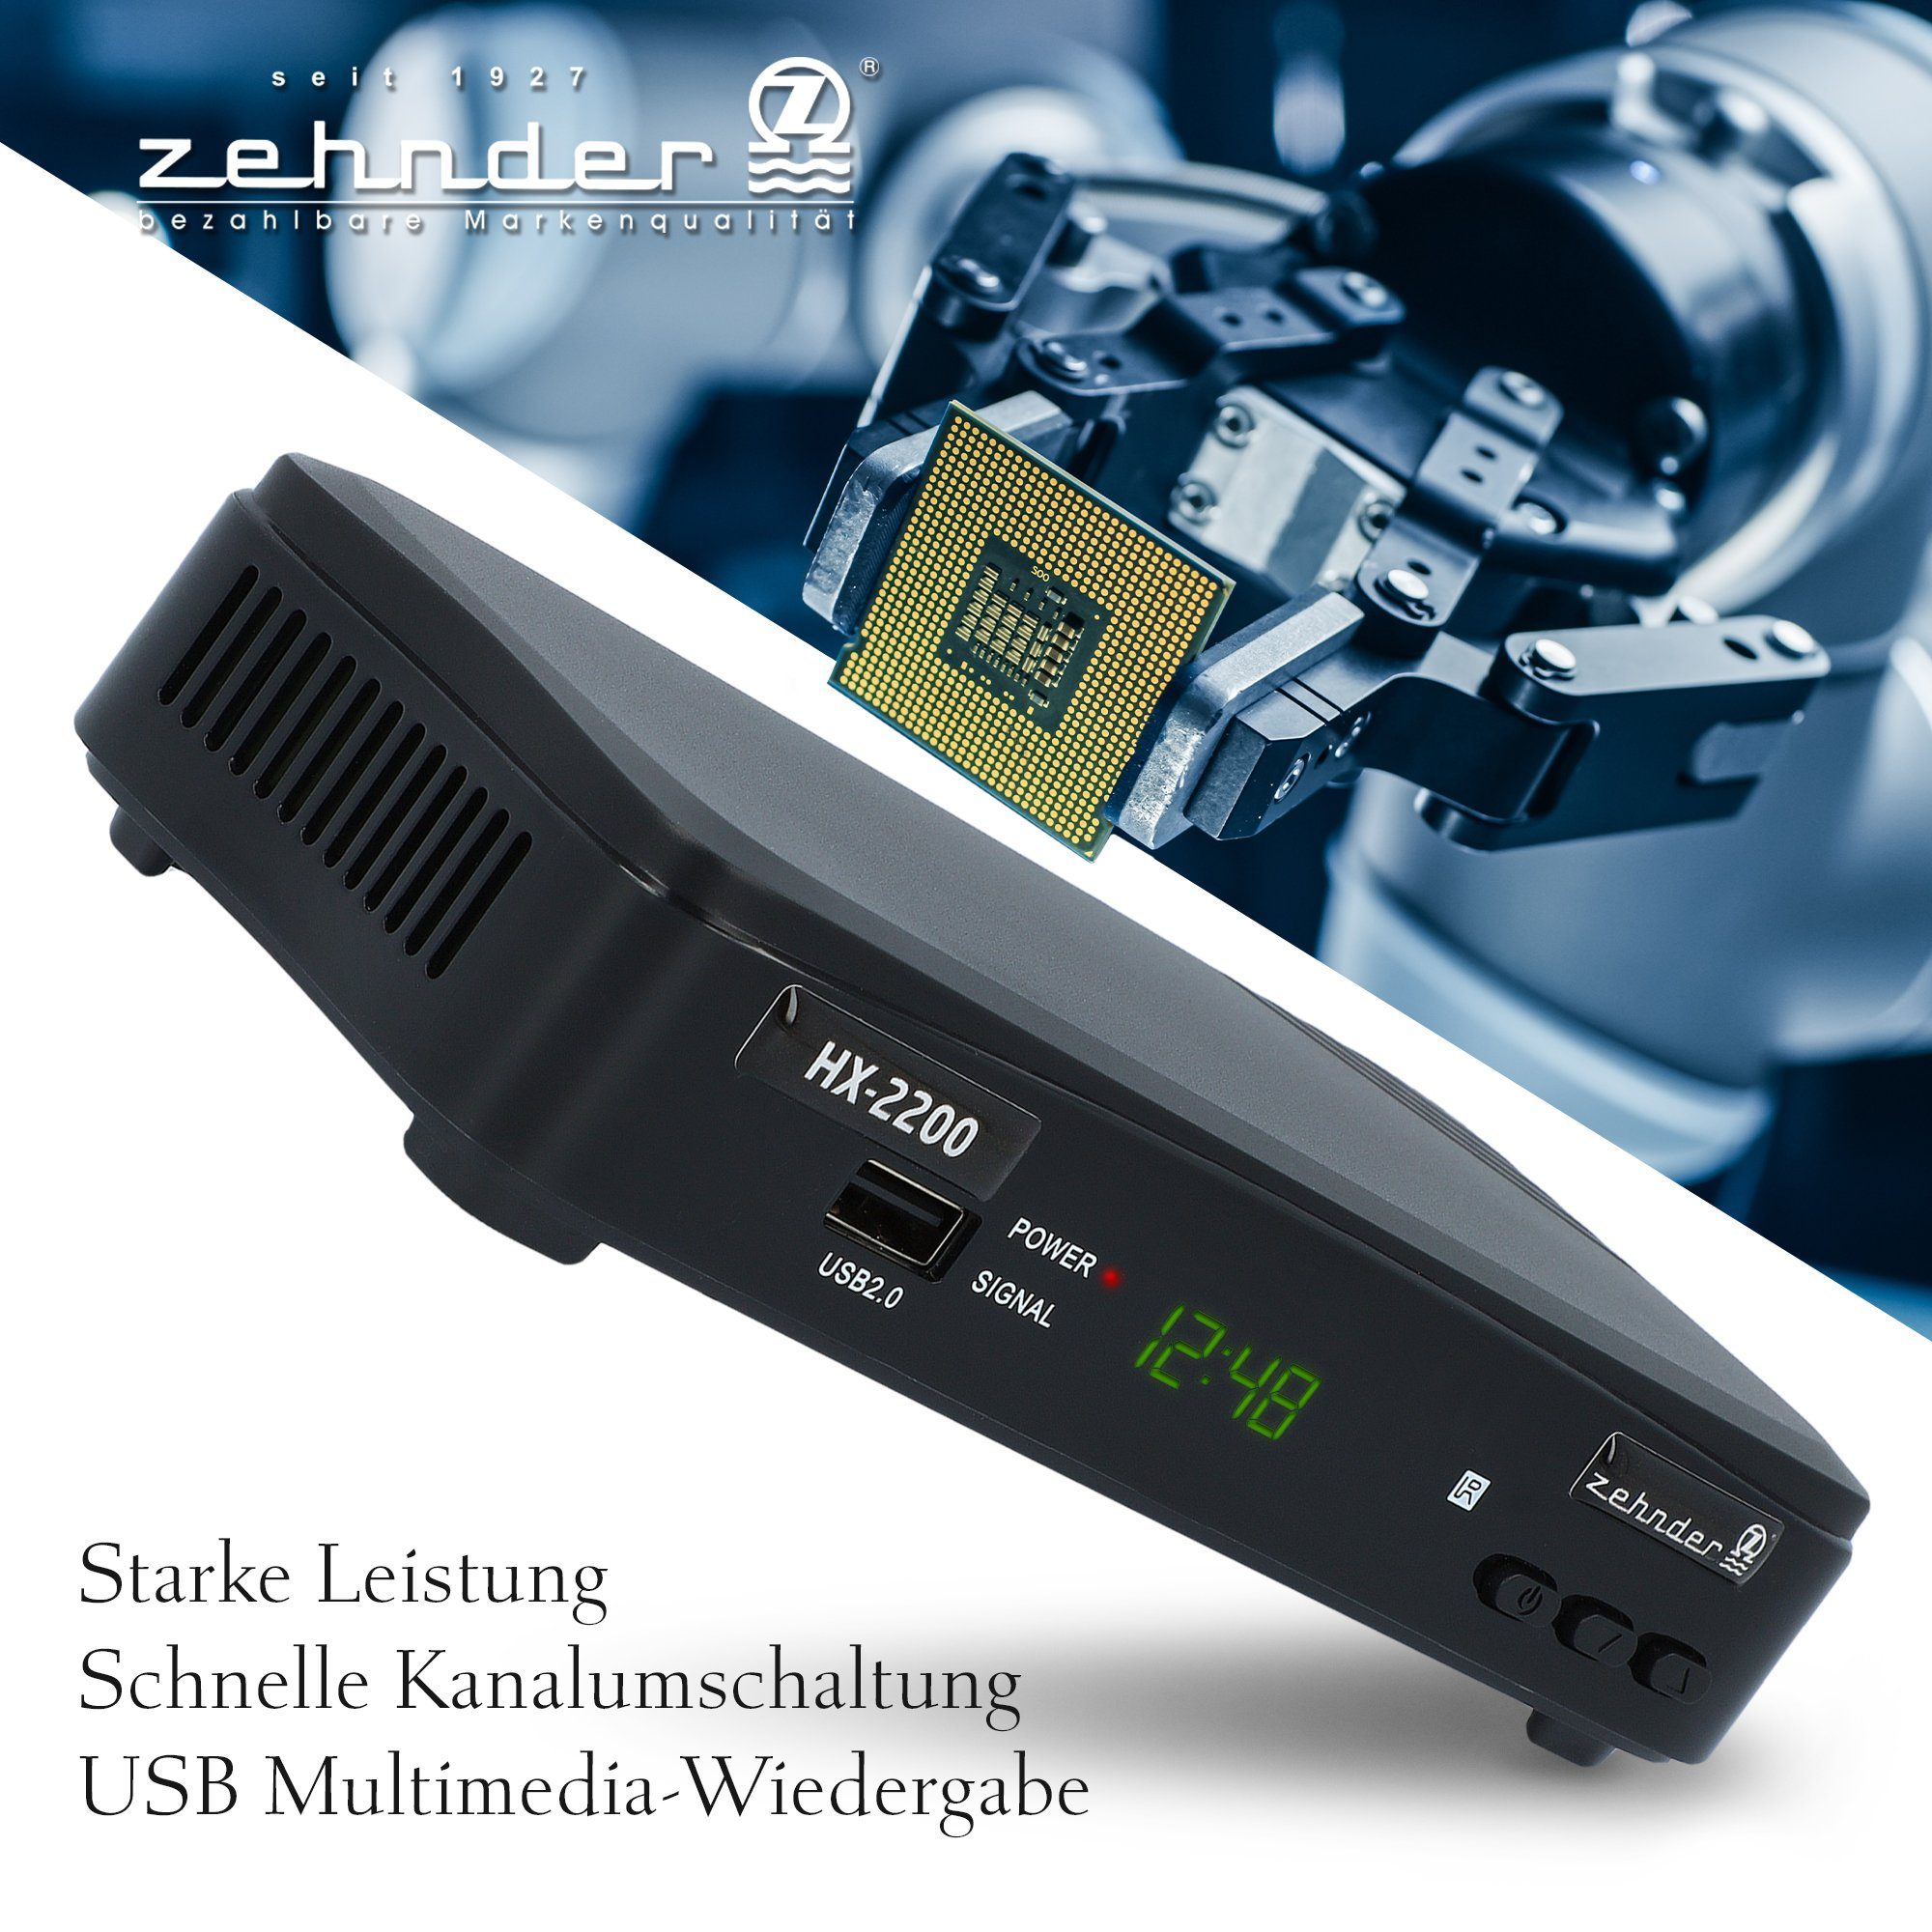 HX-2200 Coaxial, SAT-Receiver PVR 12V tauglich) USB, - HDMI, Einkabel ready (Aufnahmefunktion, Zehnder Camping SCART,